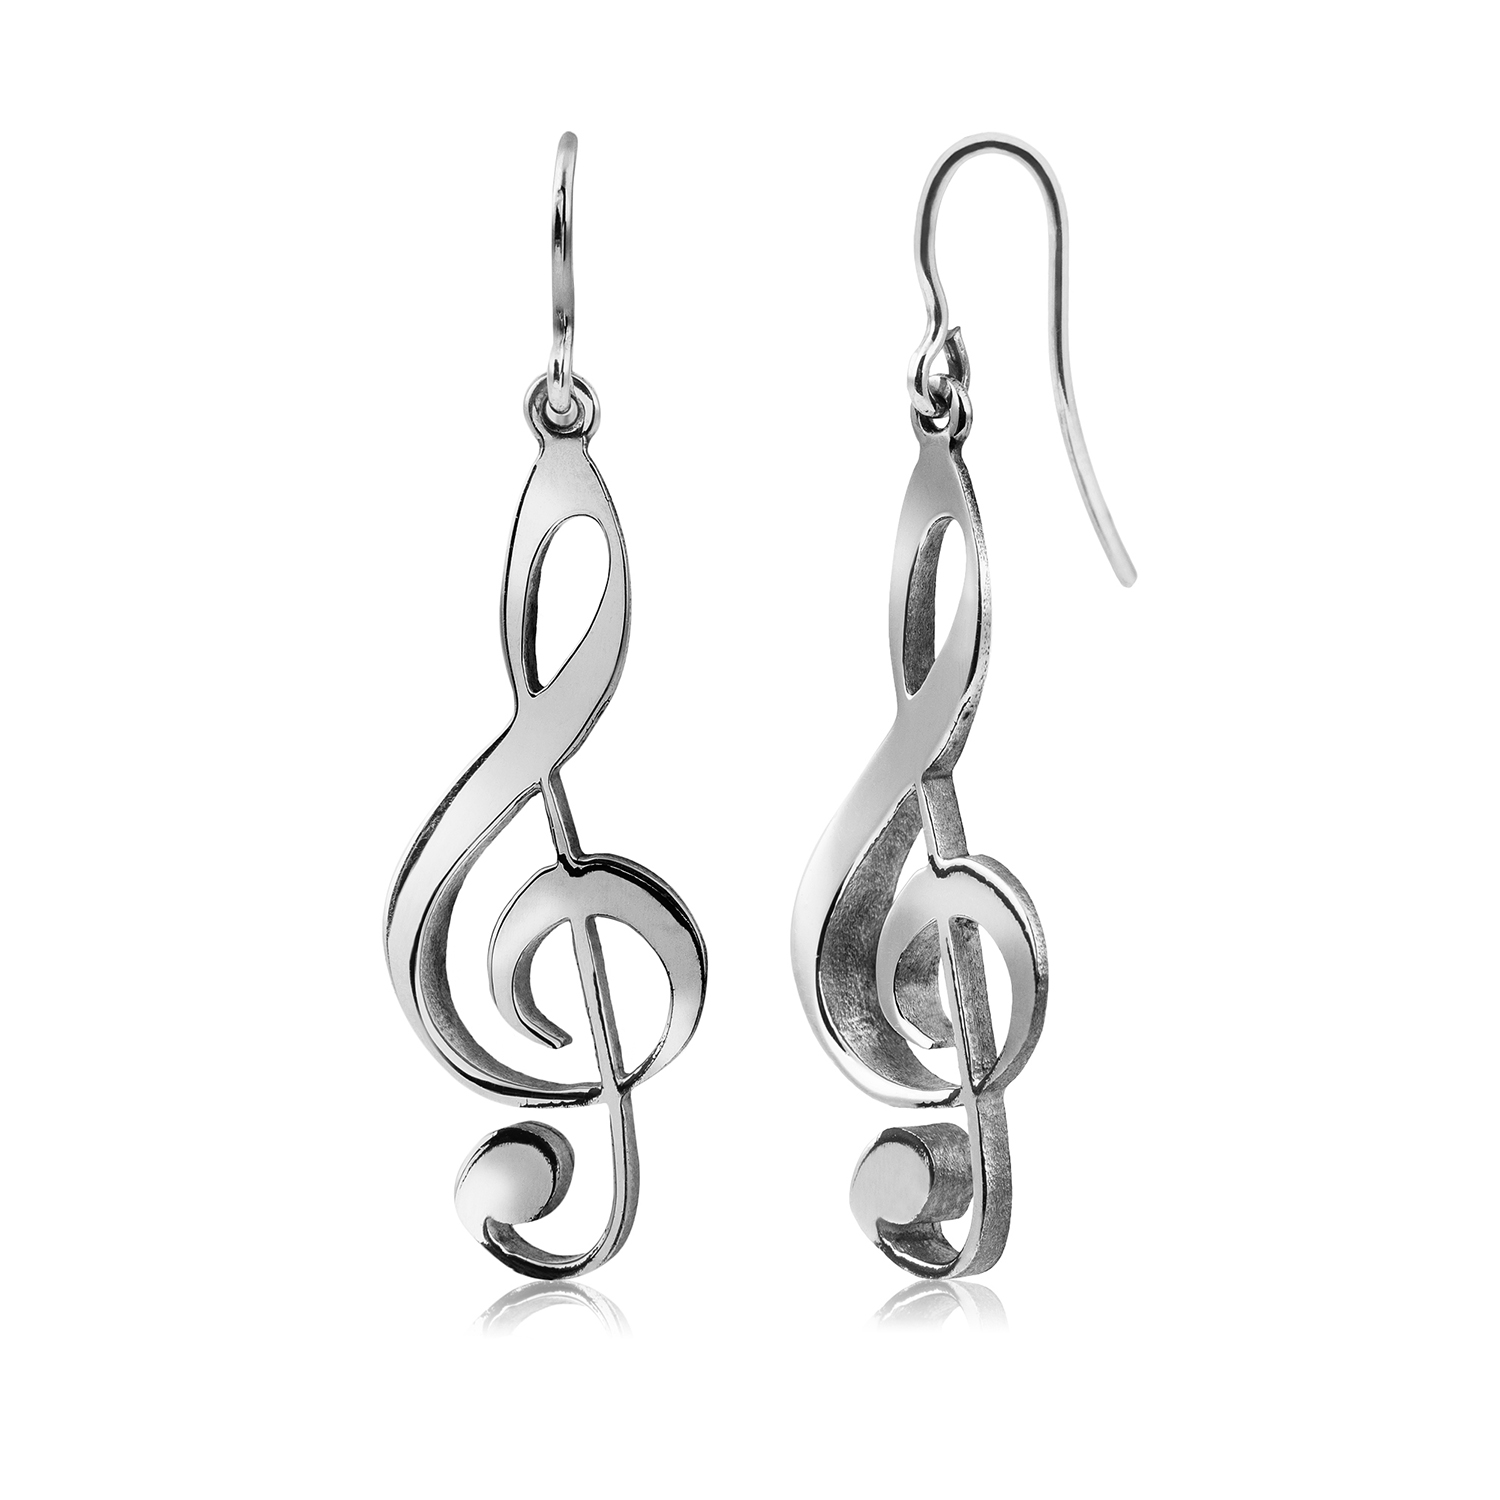 Symphony earrings